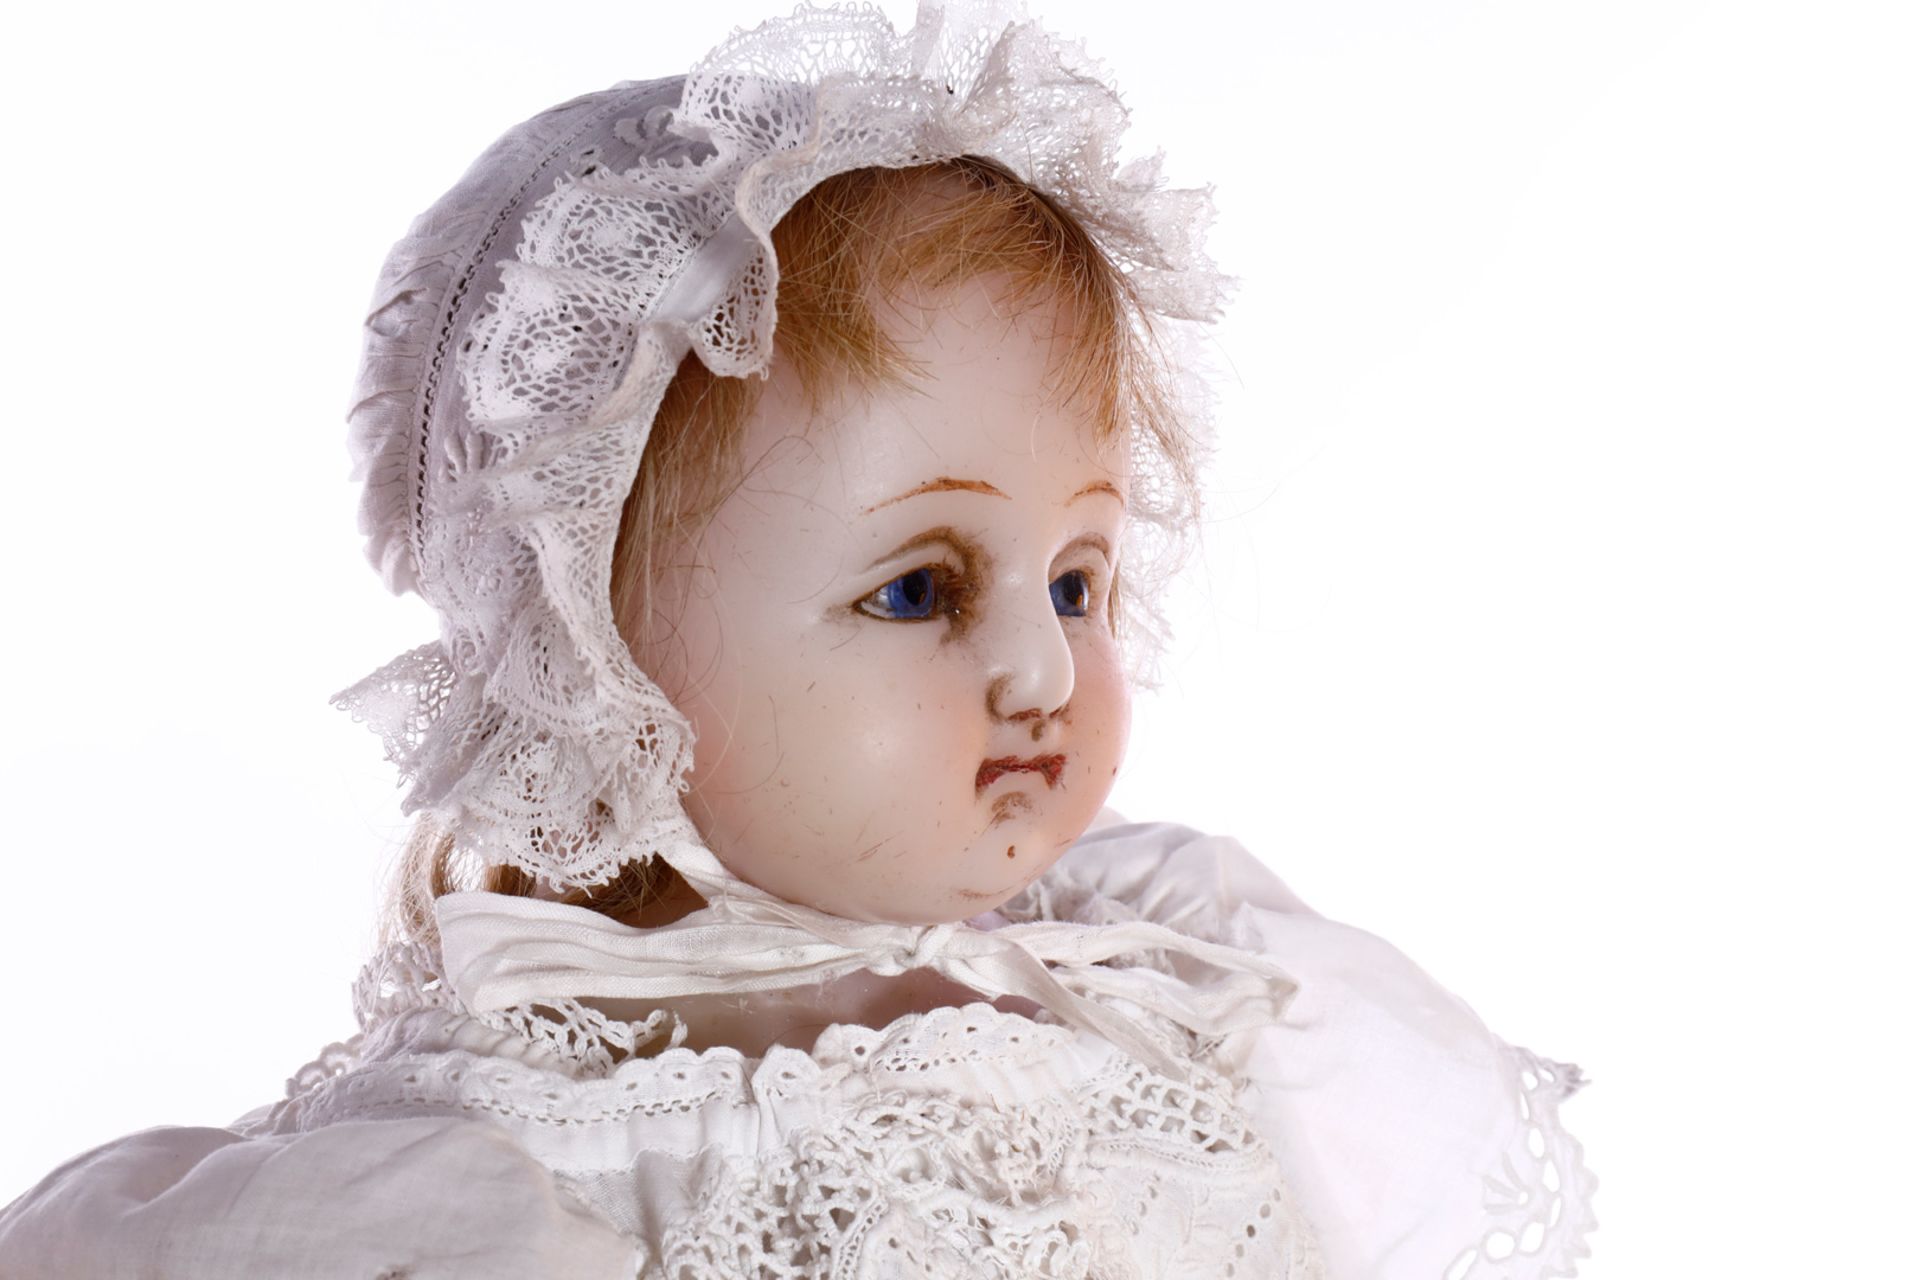 Englische Wachs-Brustplattkopf-Puppe um 1870, eingesetzte Glasaugen, Perücke teilweise - Image 3 of 6